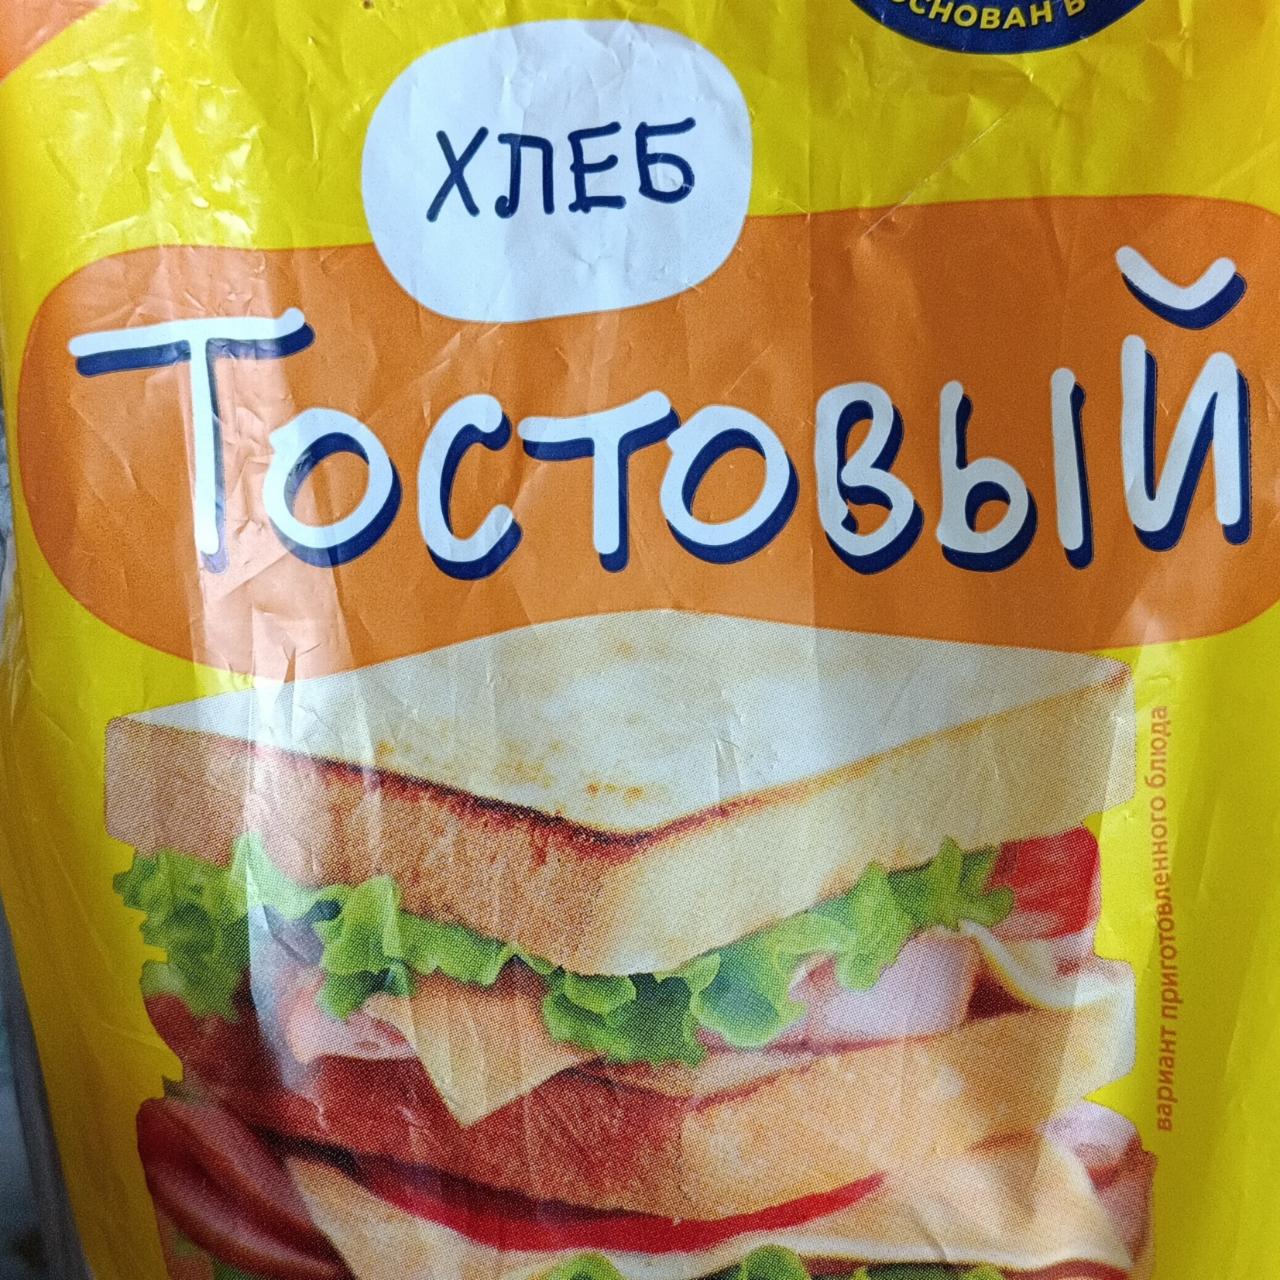 Фото - Хлеб для тостов нарезной в упаковке Самарский хлебозавод № 5